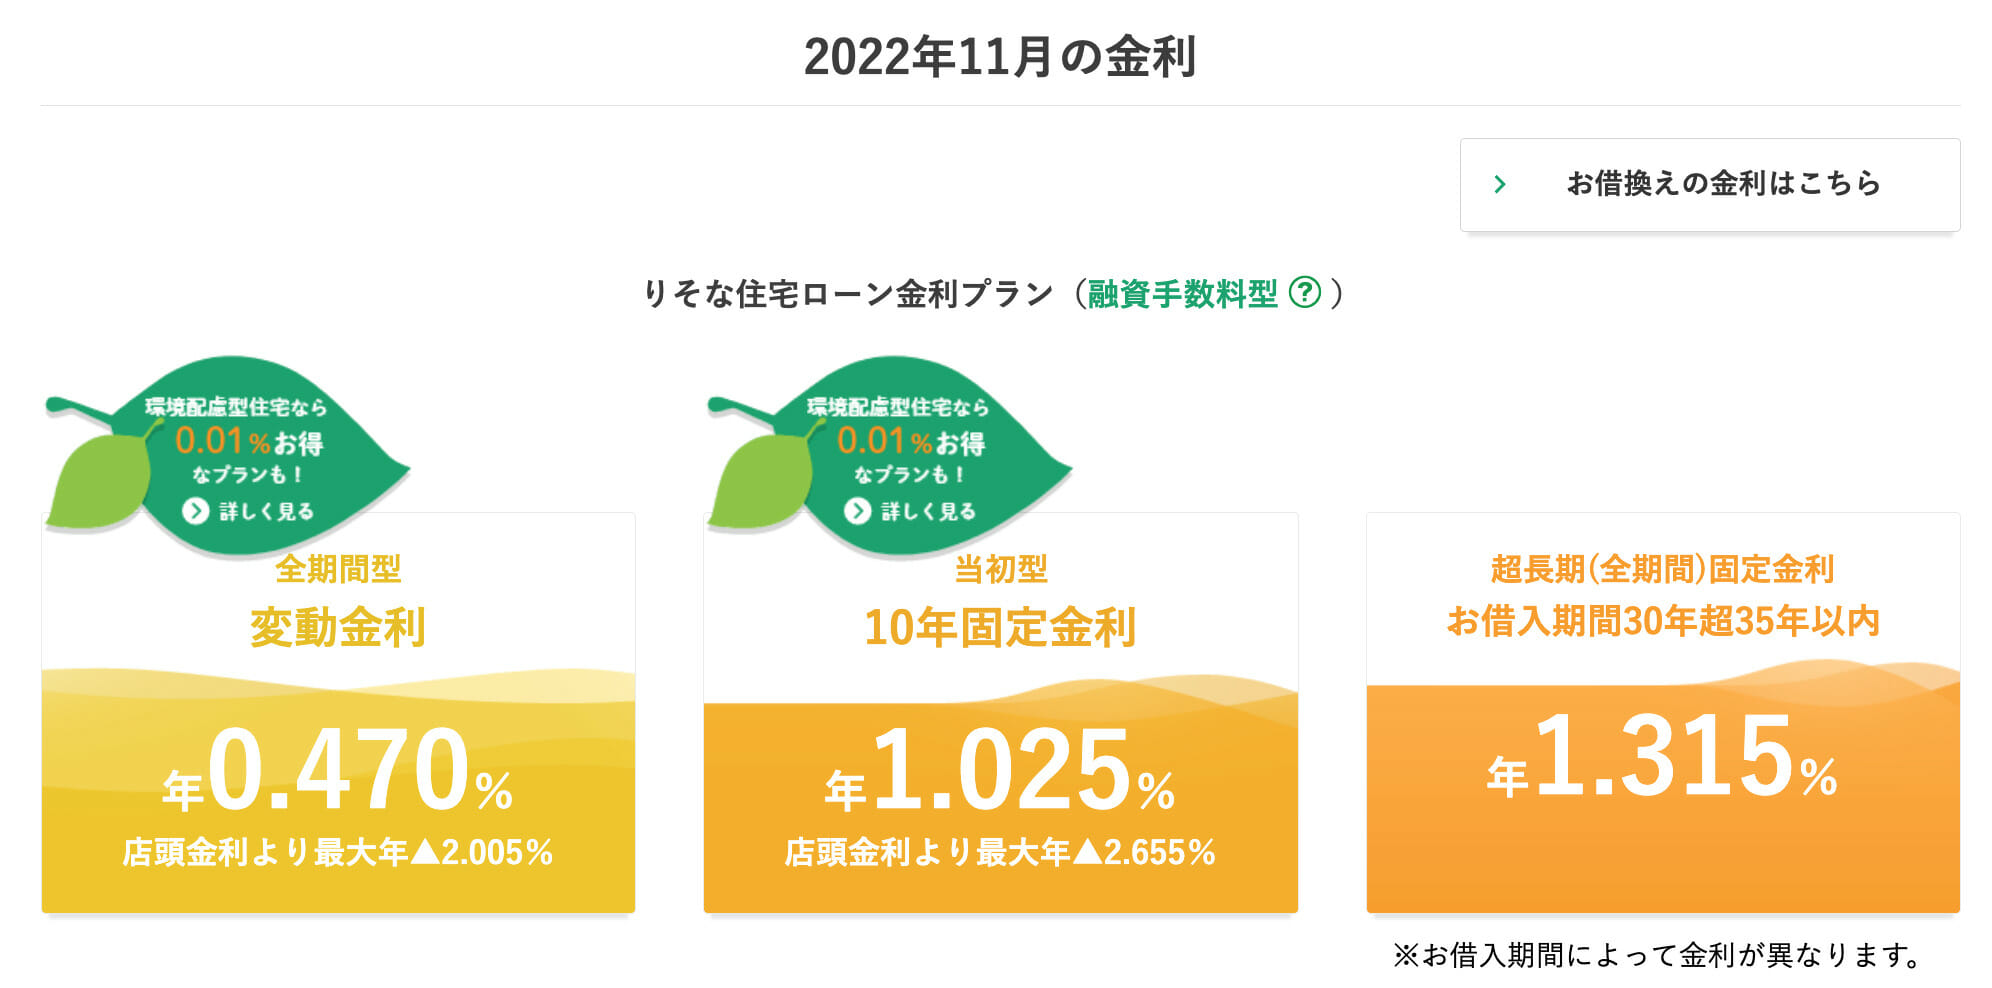 埼玉りそな銀行の2022年11月の住宅ローン金利